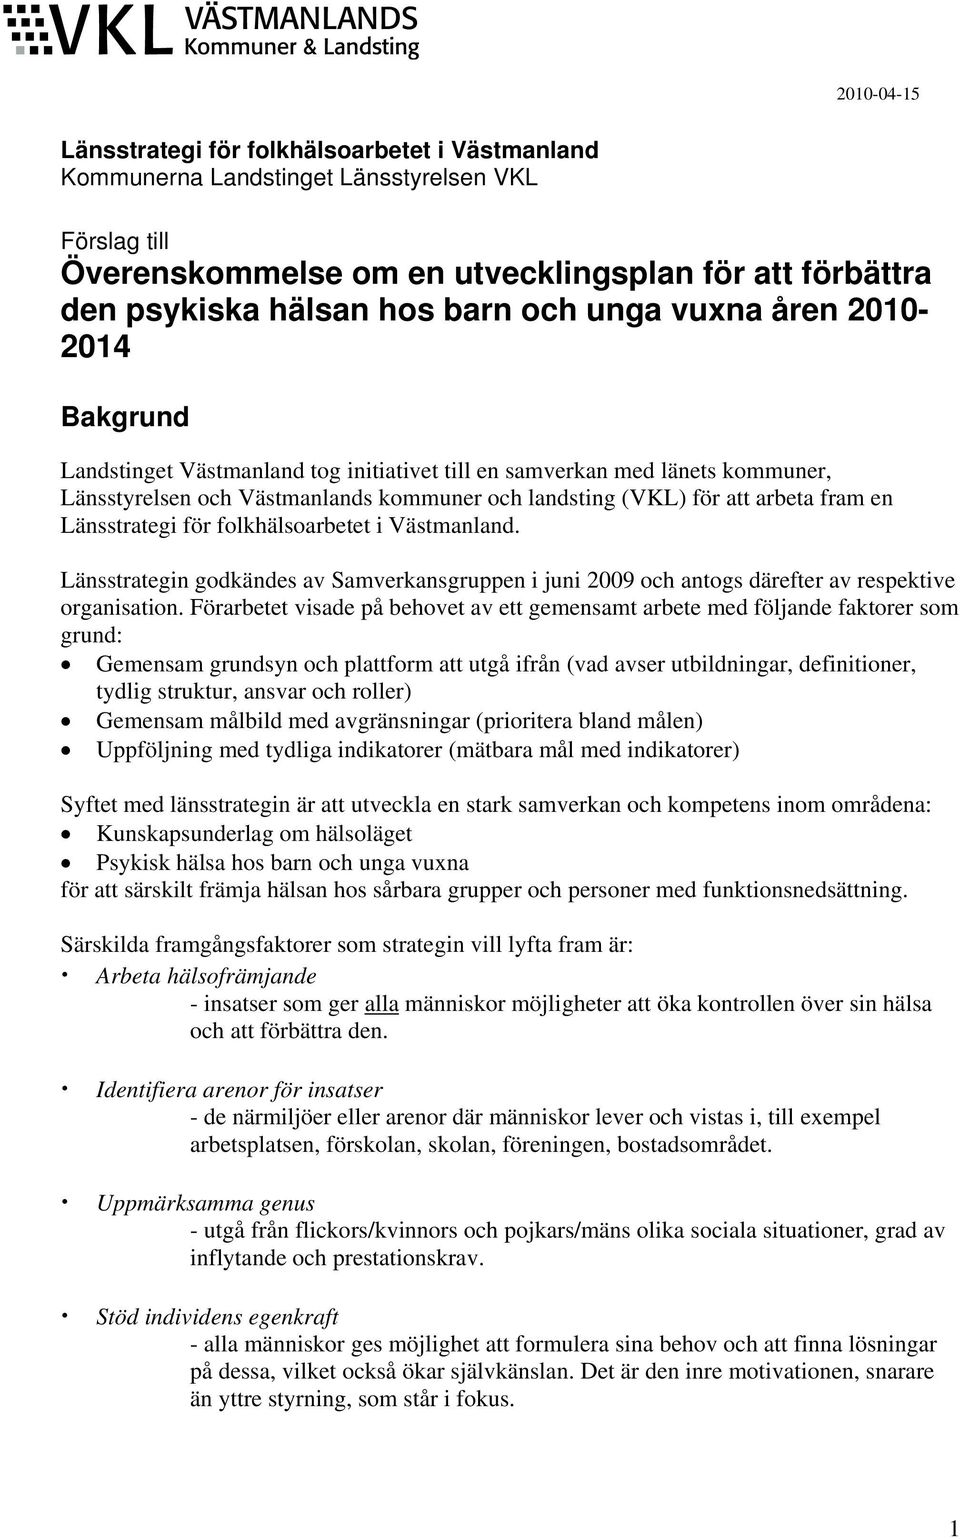 en Länsstrategi för folkhälsoarbetet i Västmanland. Länsstrategin godkändes av Samverkansgruppen i juni 2009 och antogs därefter av respektive organisation.